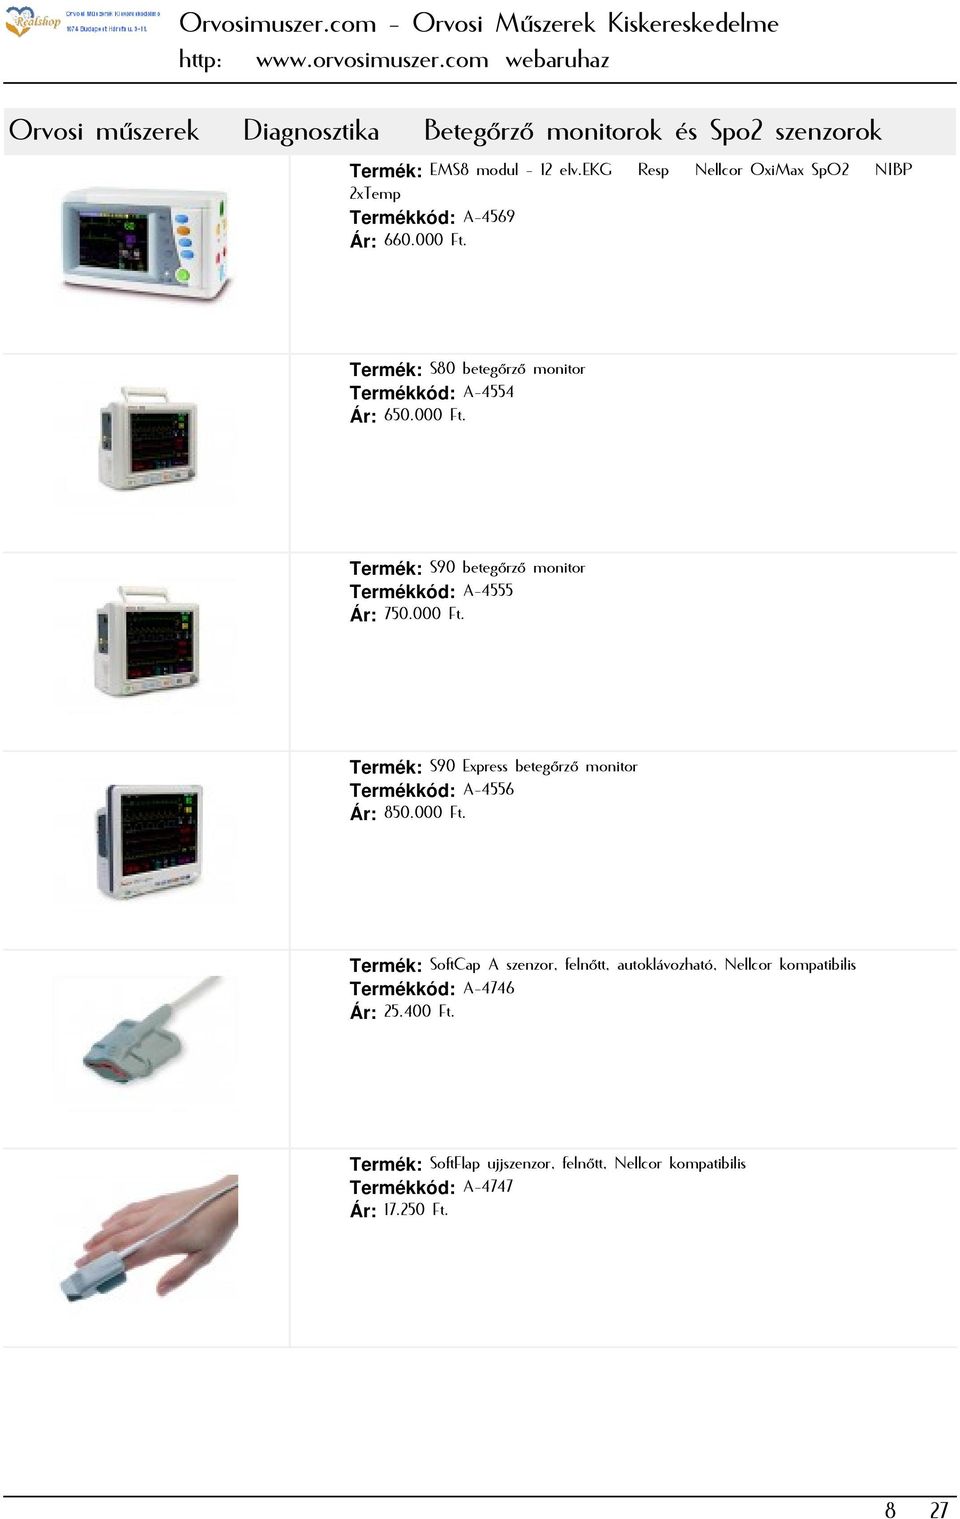 000 Ft. Termék: S90 Express betegőrző monitor Termékkód: A-4556 Ár: 850.000 Ft. Termék: SoftCap A szenzor, felnőtt, autoklávozható, Nellcor kompatibilis Termékkód: A-4746 Ár: 25.